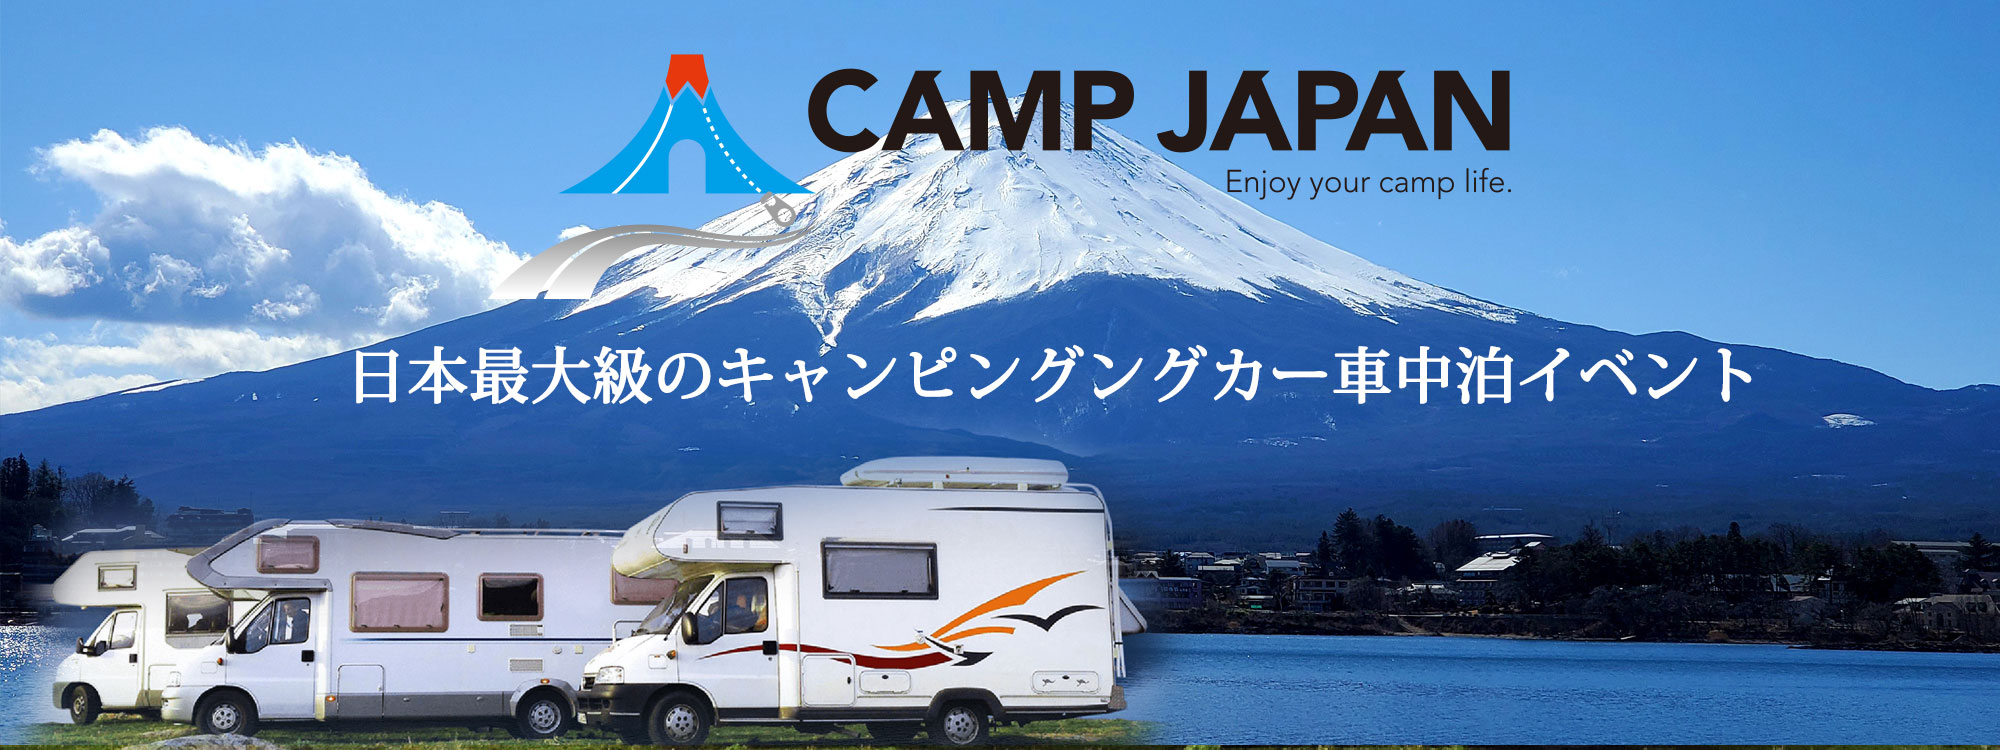 目指すのは「新しい遊び場」。キャンプ・車中泊の「楽しみ」や「遊び」を提案するCAMP JAPAN